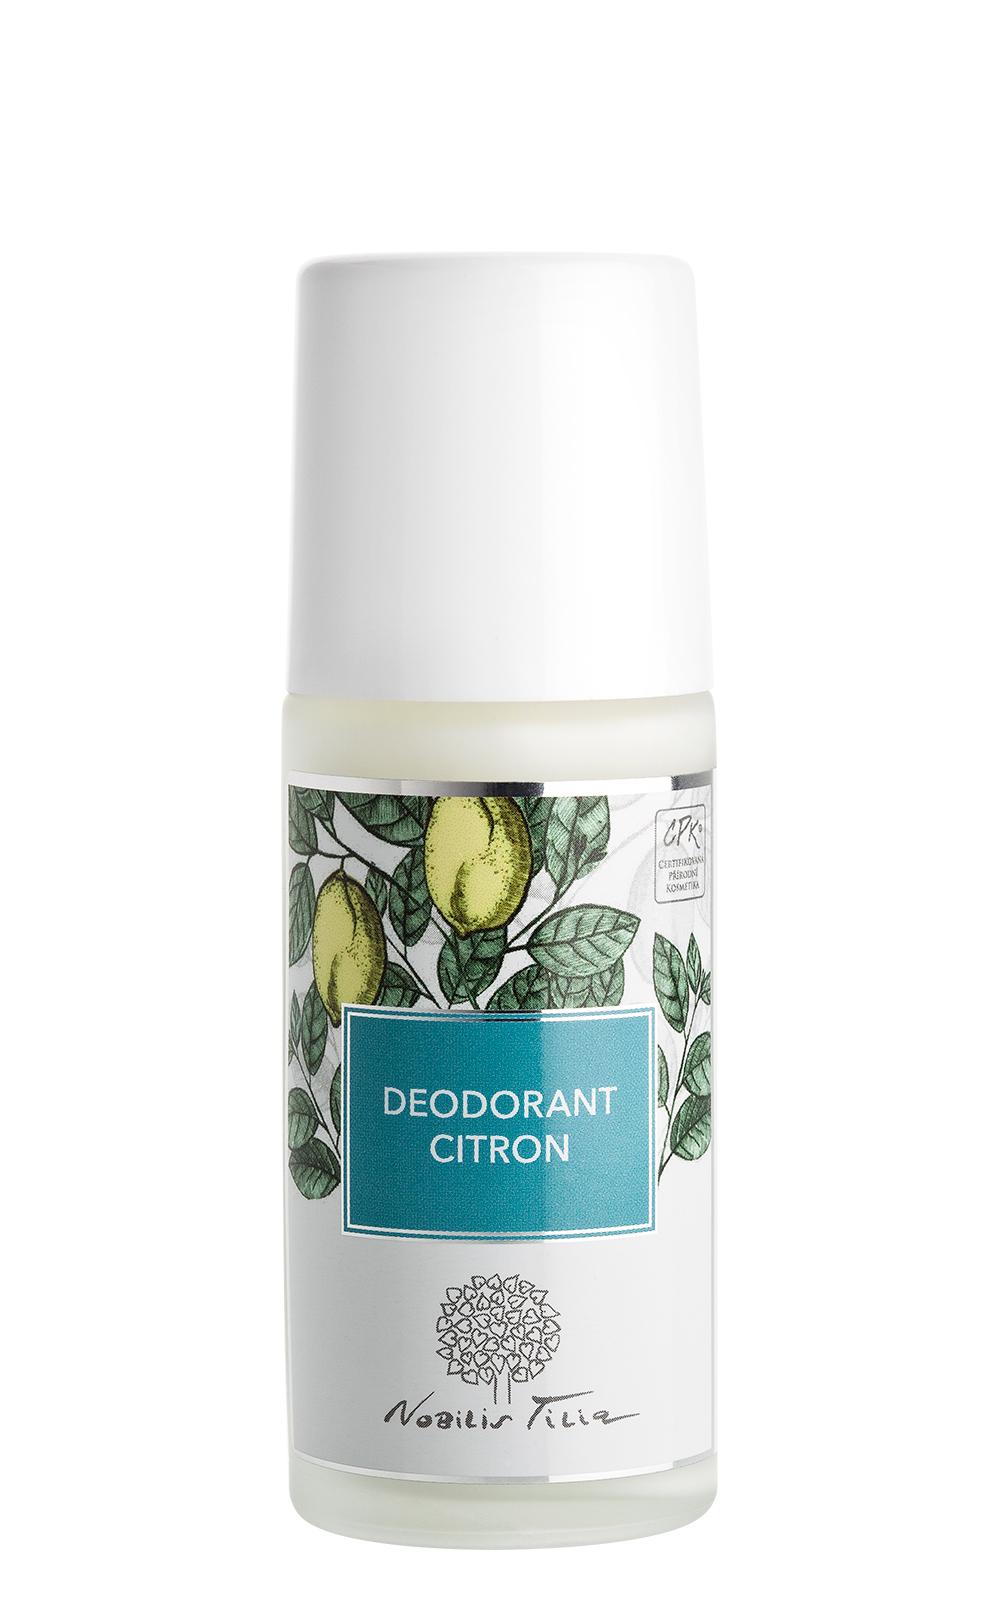 Deodorant CITRON 50 ml - Nobilis Tilia